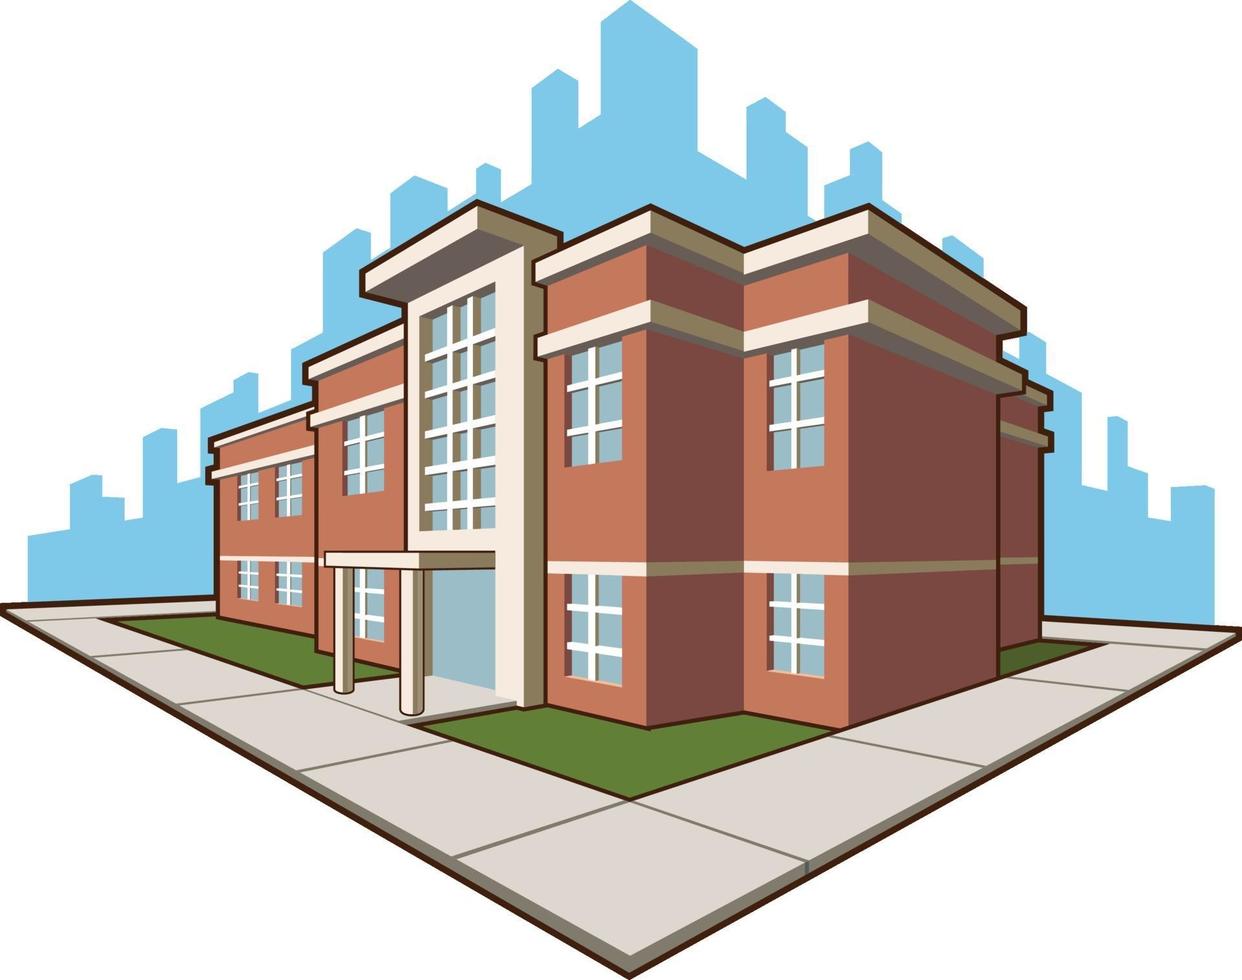 School Building College Academy Education Cartoon Vector Illustration